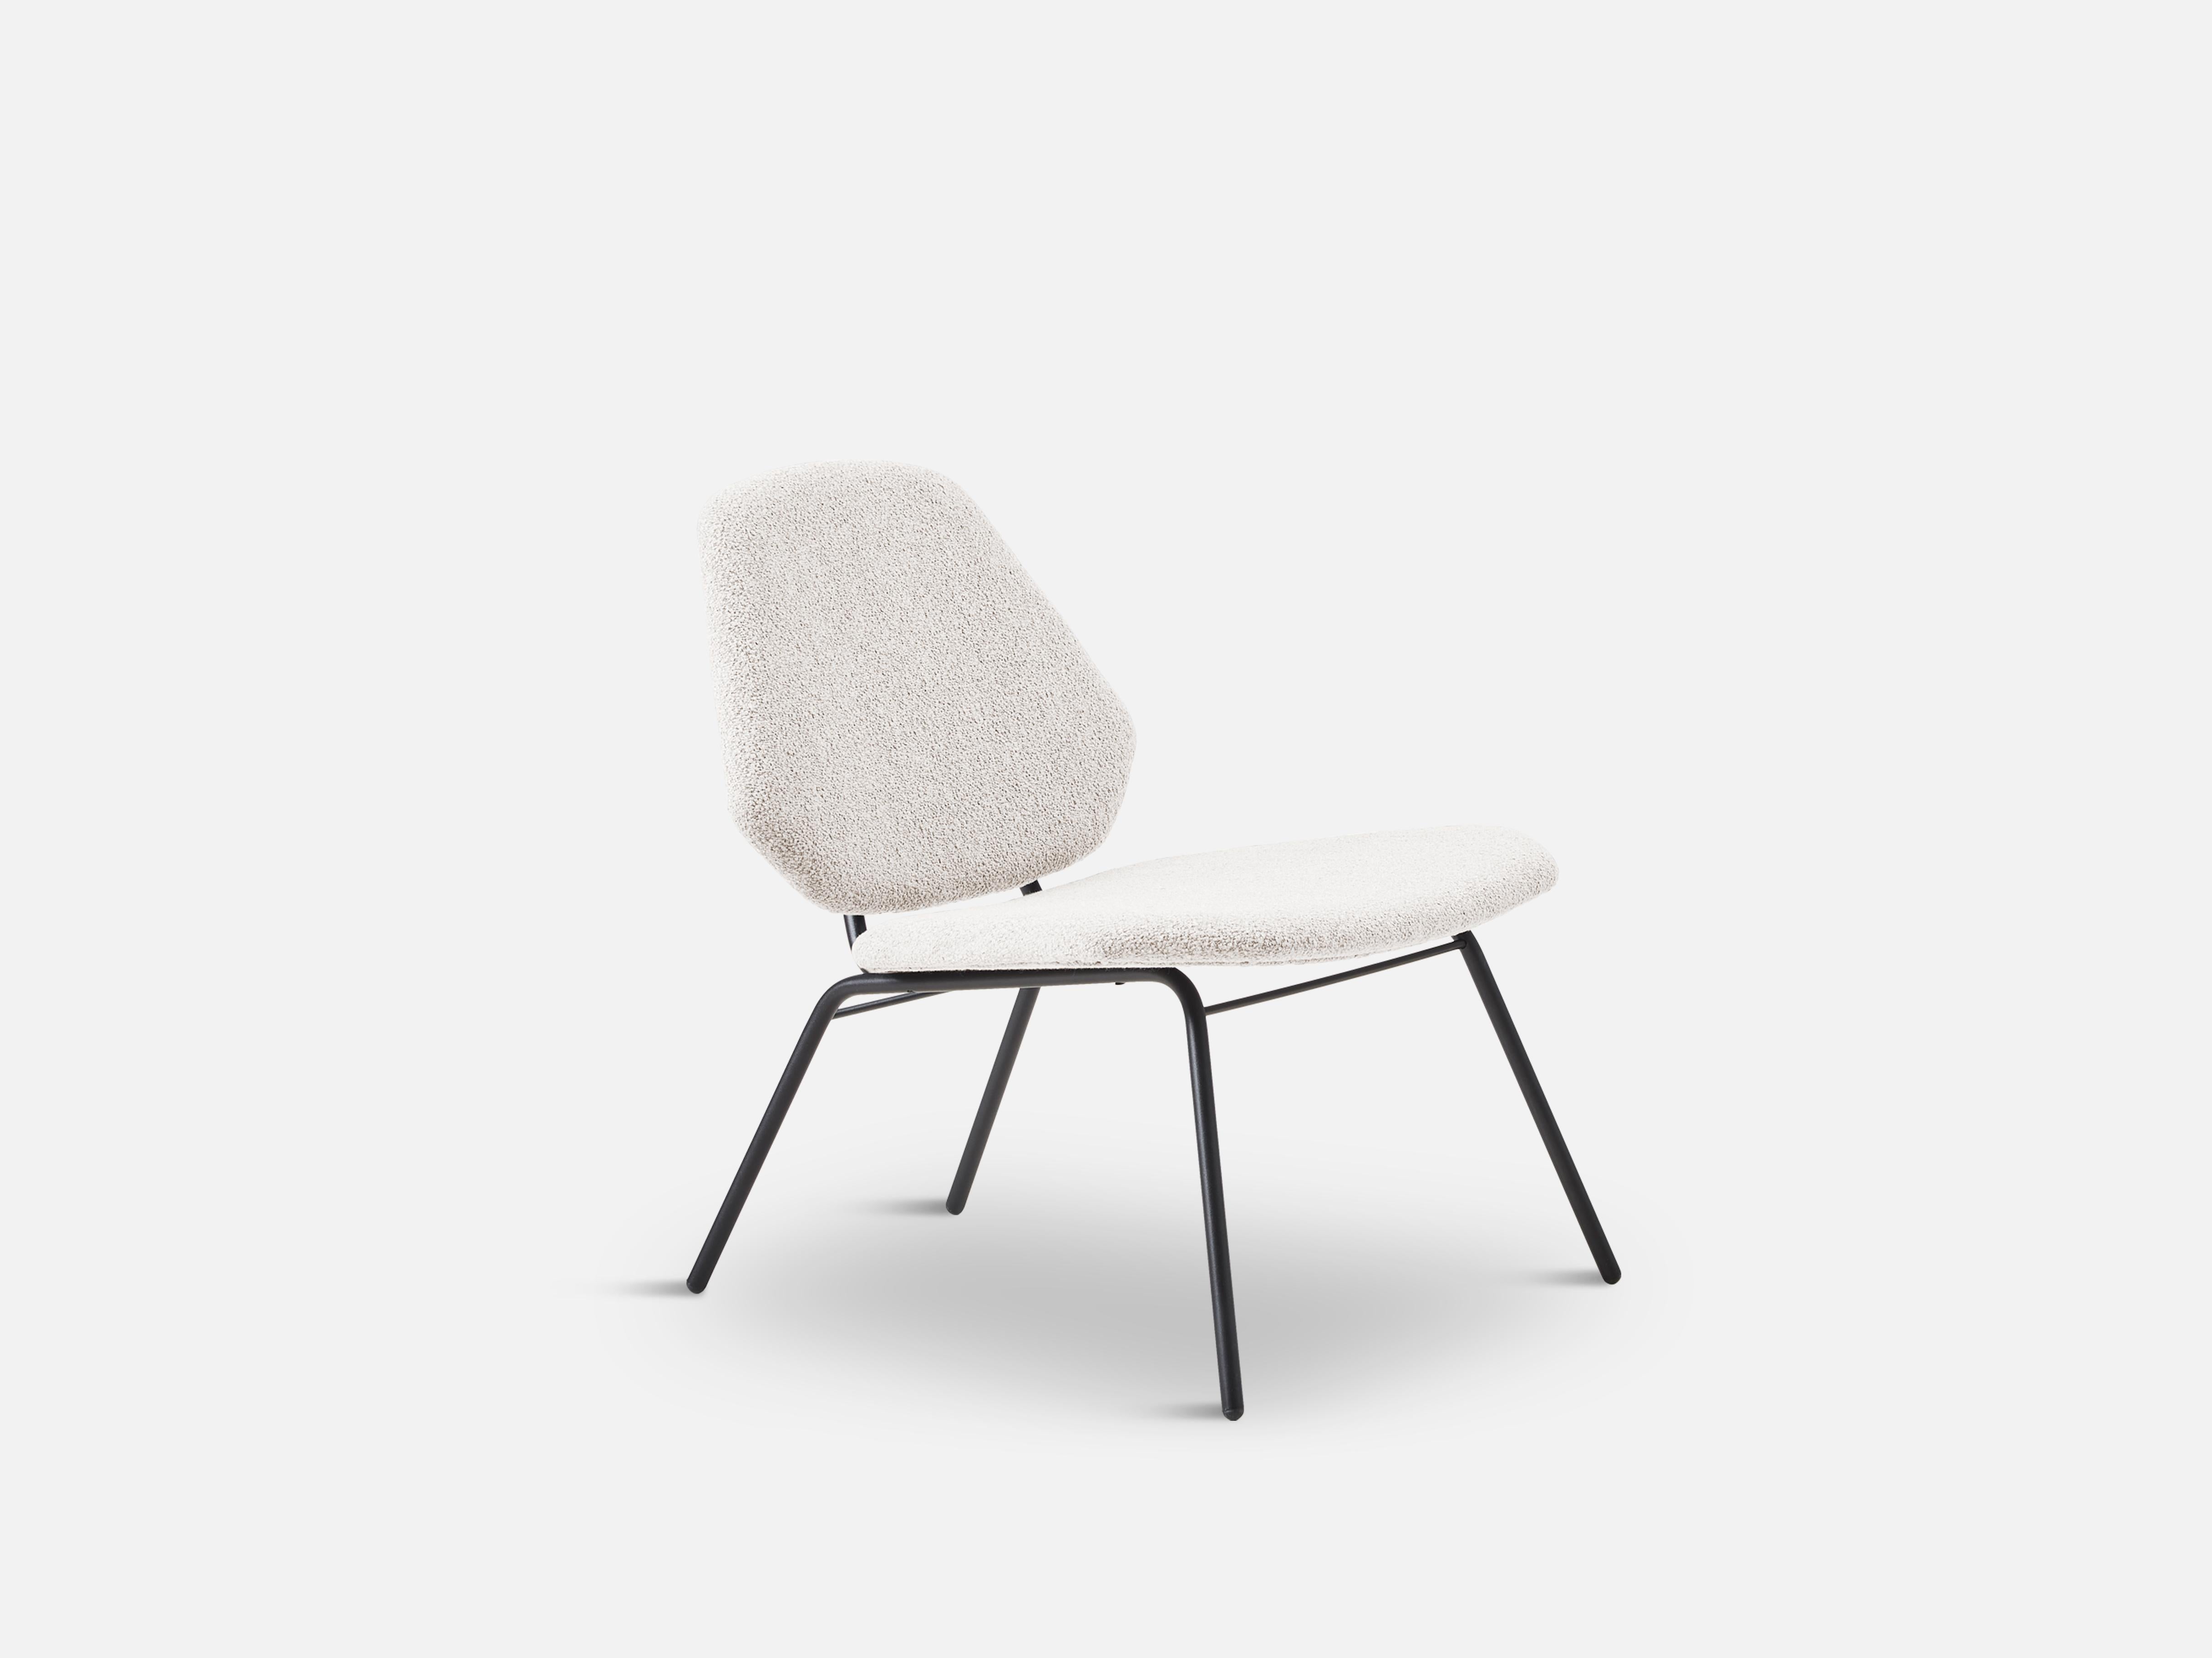 Chaise longue ivoire Lean de Nur Design
Matériaux : Contreplaqué, fibre et mousse.
Dimensions : D 66 x L 64 x H 72 cm
Disponible également en différentes couleurs.

Les fondateurs, Mia et Torben Koed, ont décidé de mettre leurs 30 années